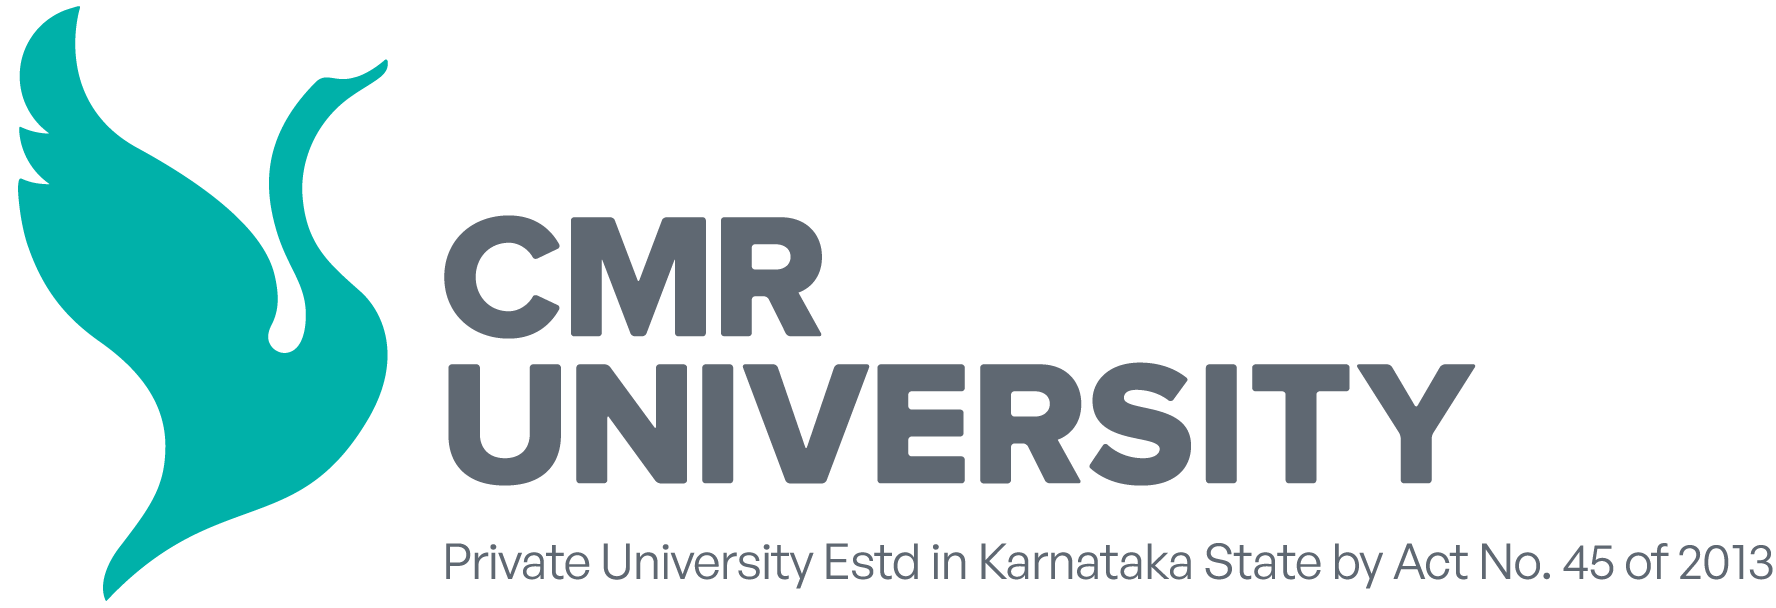 Best Private University in Bangalore, Karnataka, India